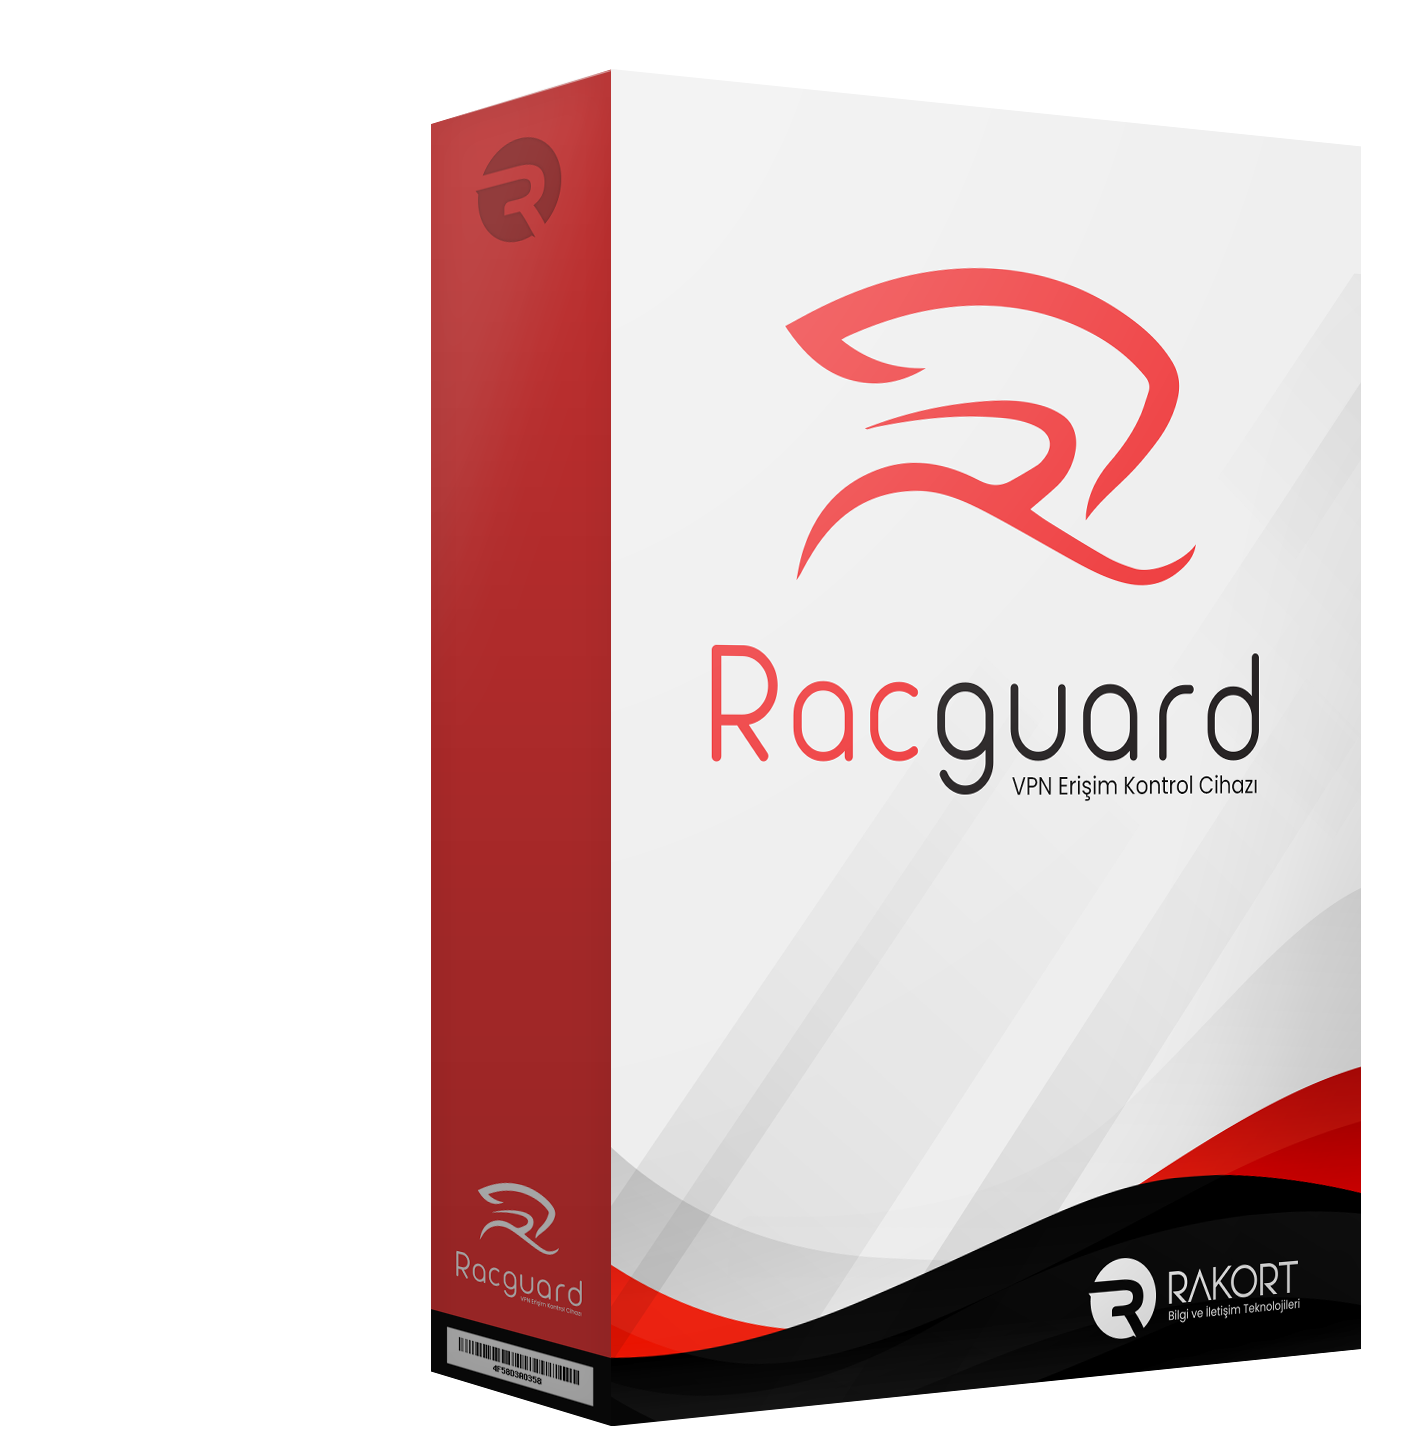 Racguard Ürün Kutusu